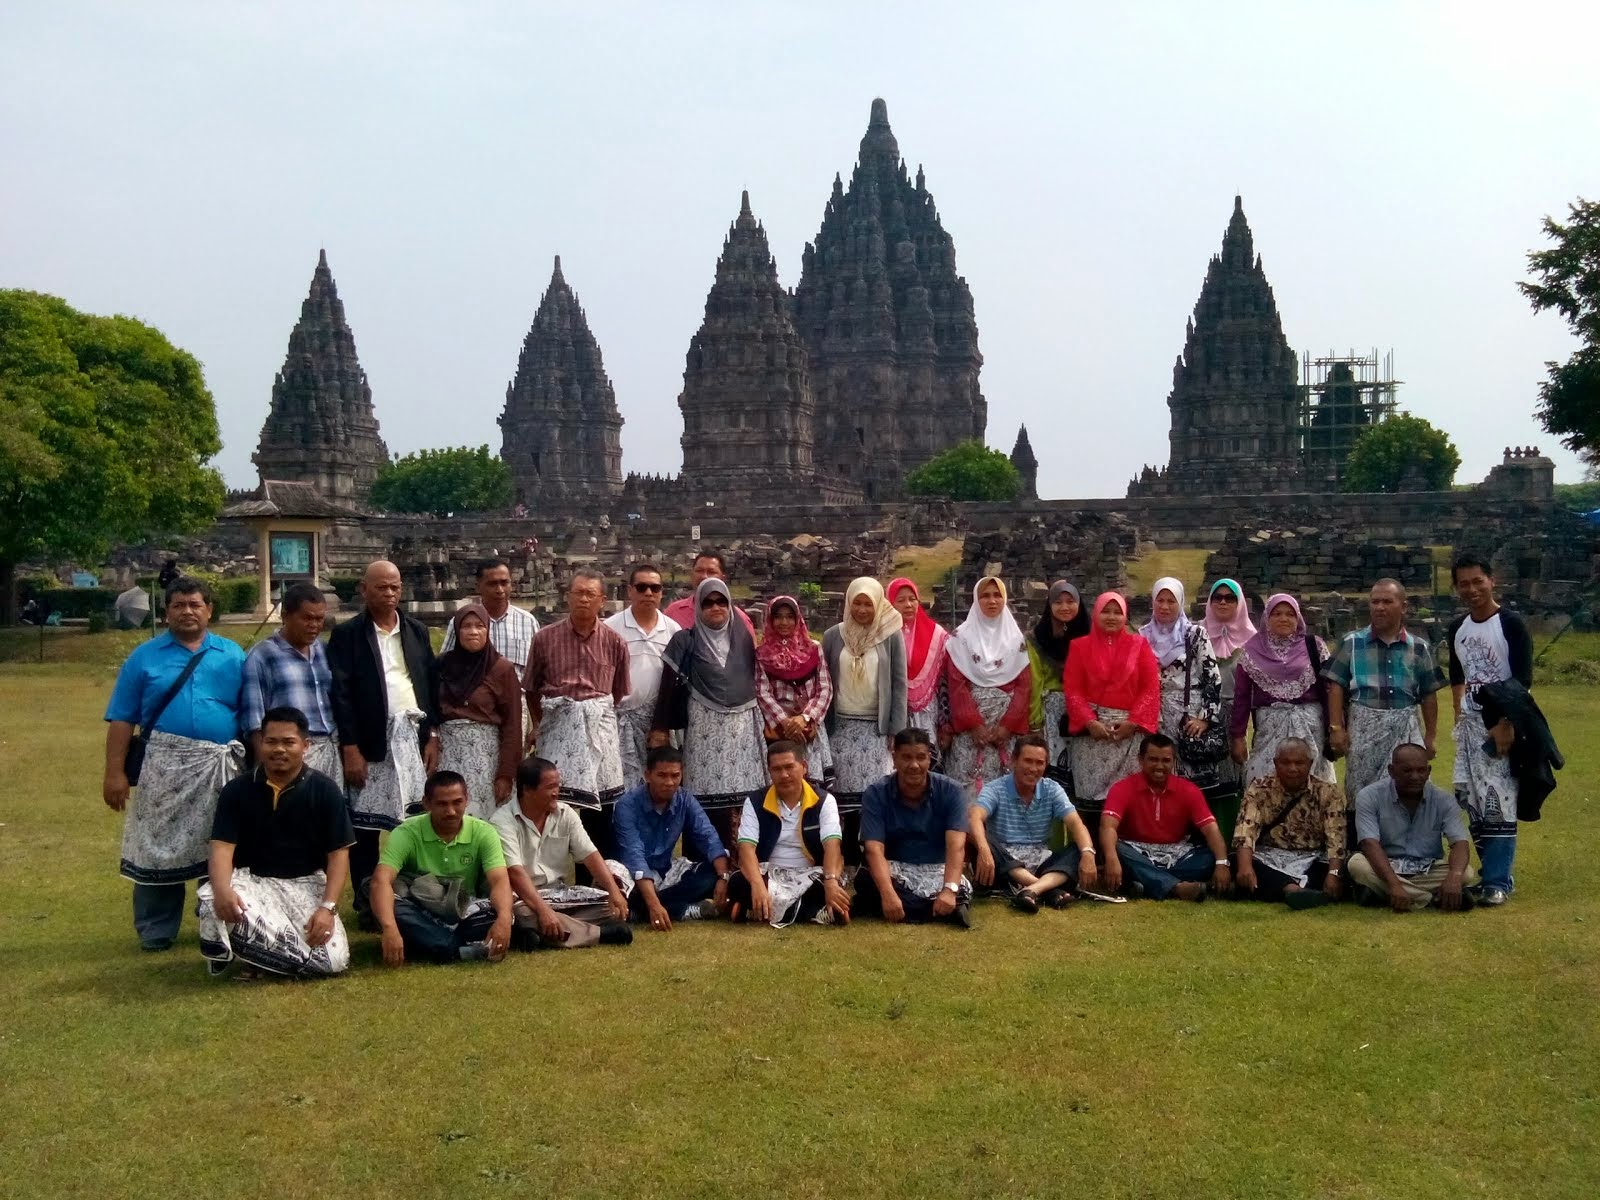 Magical the Prambanan Temple, June '14